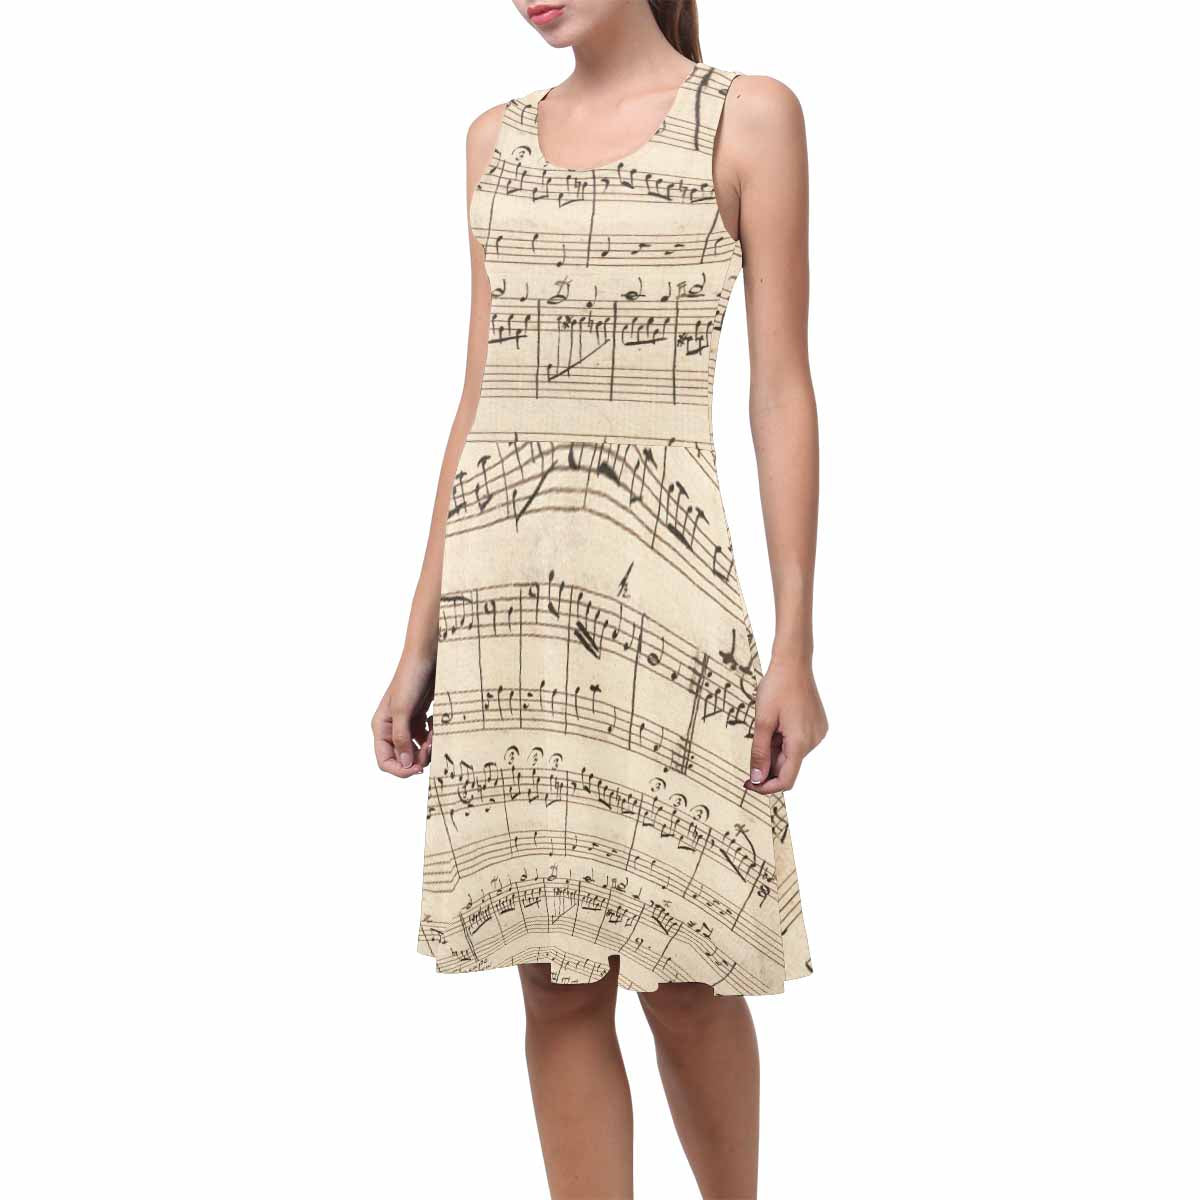 Antique General summer dress, MODEL 09534, design 21